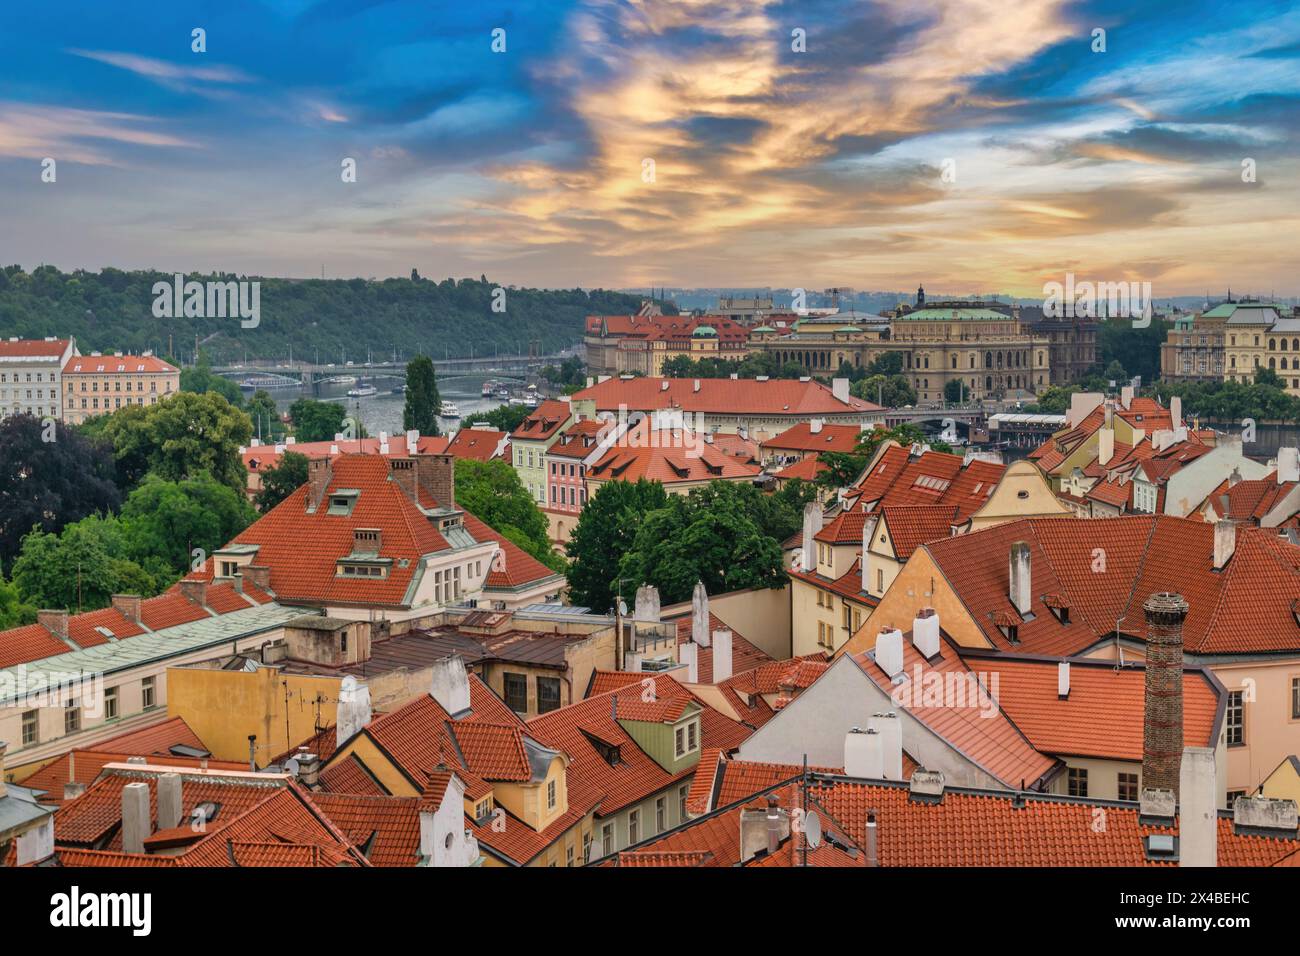 Prague République tchèque, vue panoramique de la ville au pont de Manes et à la Vltava, Tchéquie Banque D'Images